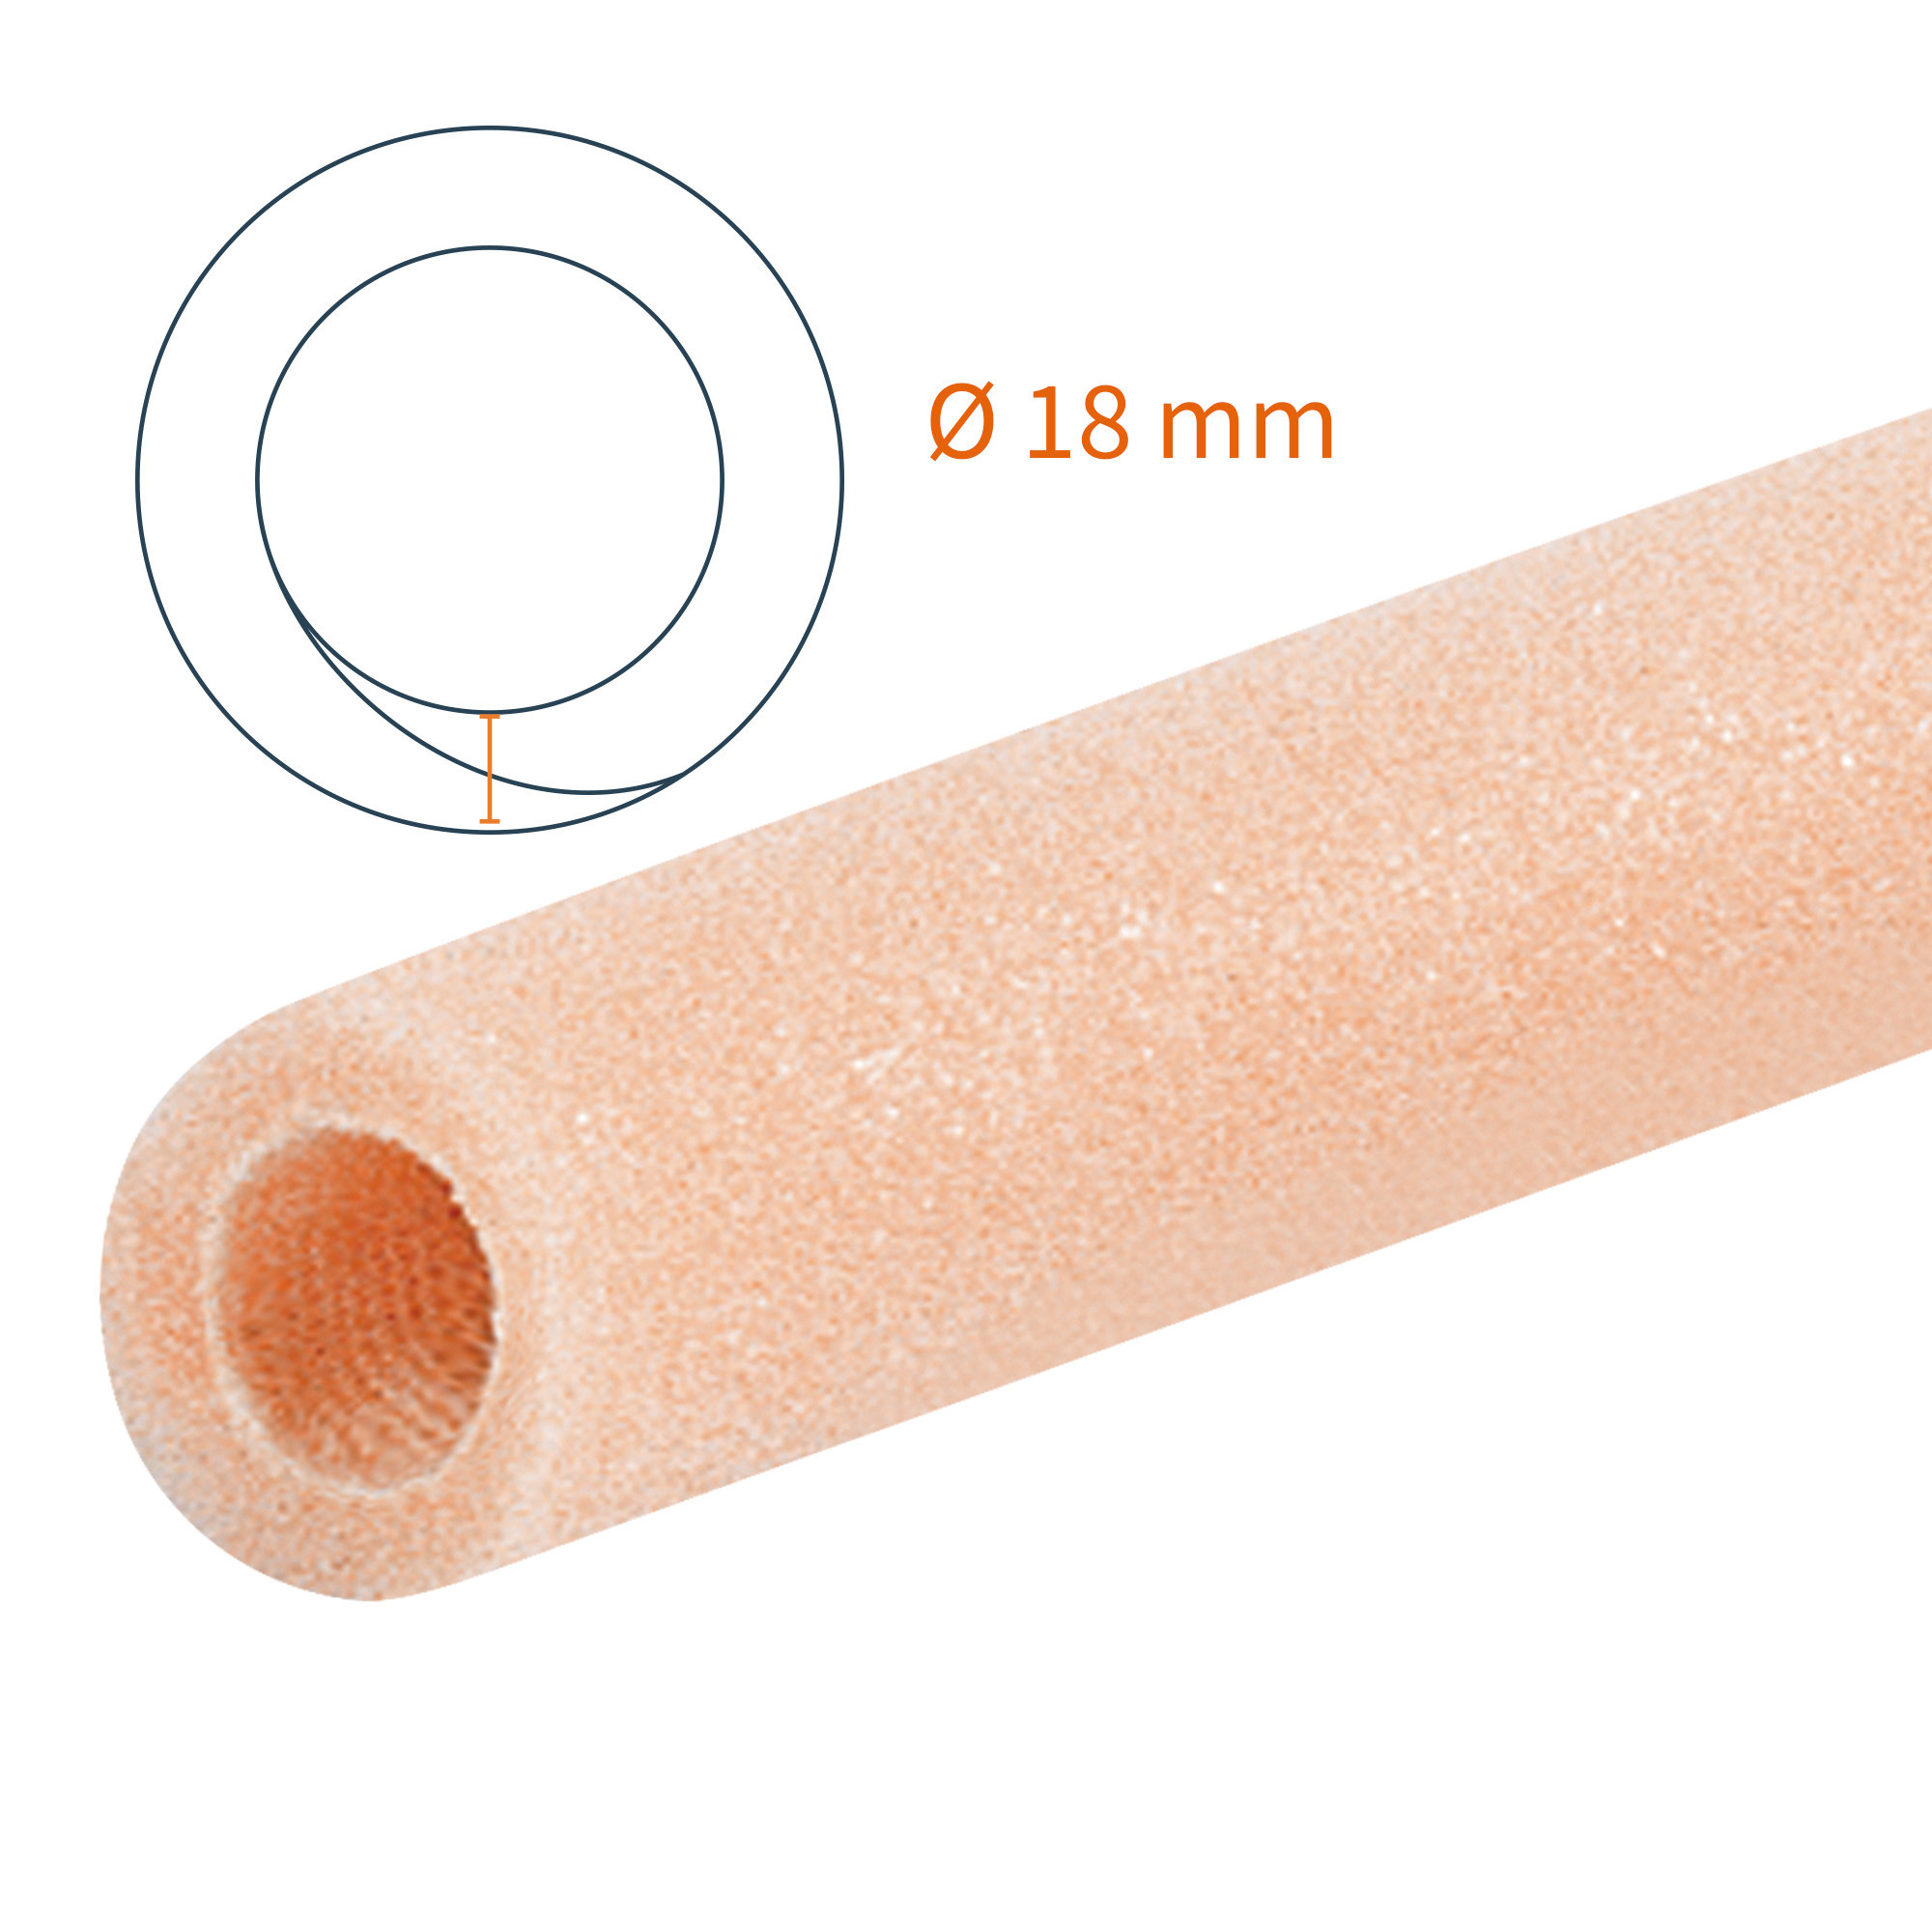 Protezione tubolare Tubifoam 18 mm B 12 pz